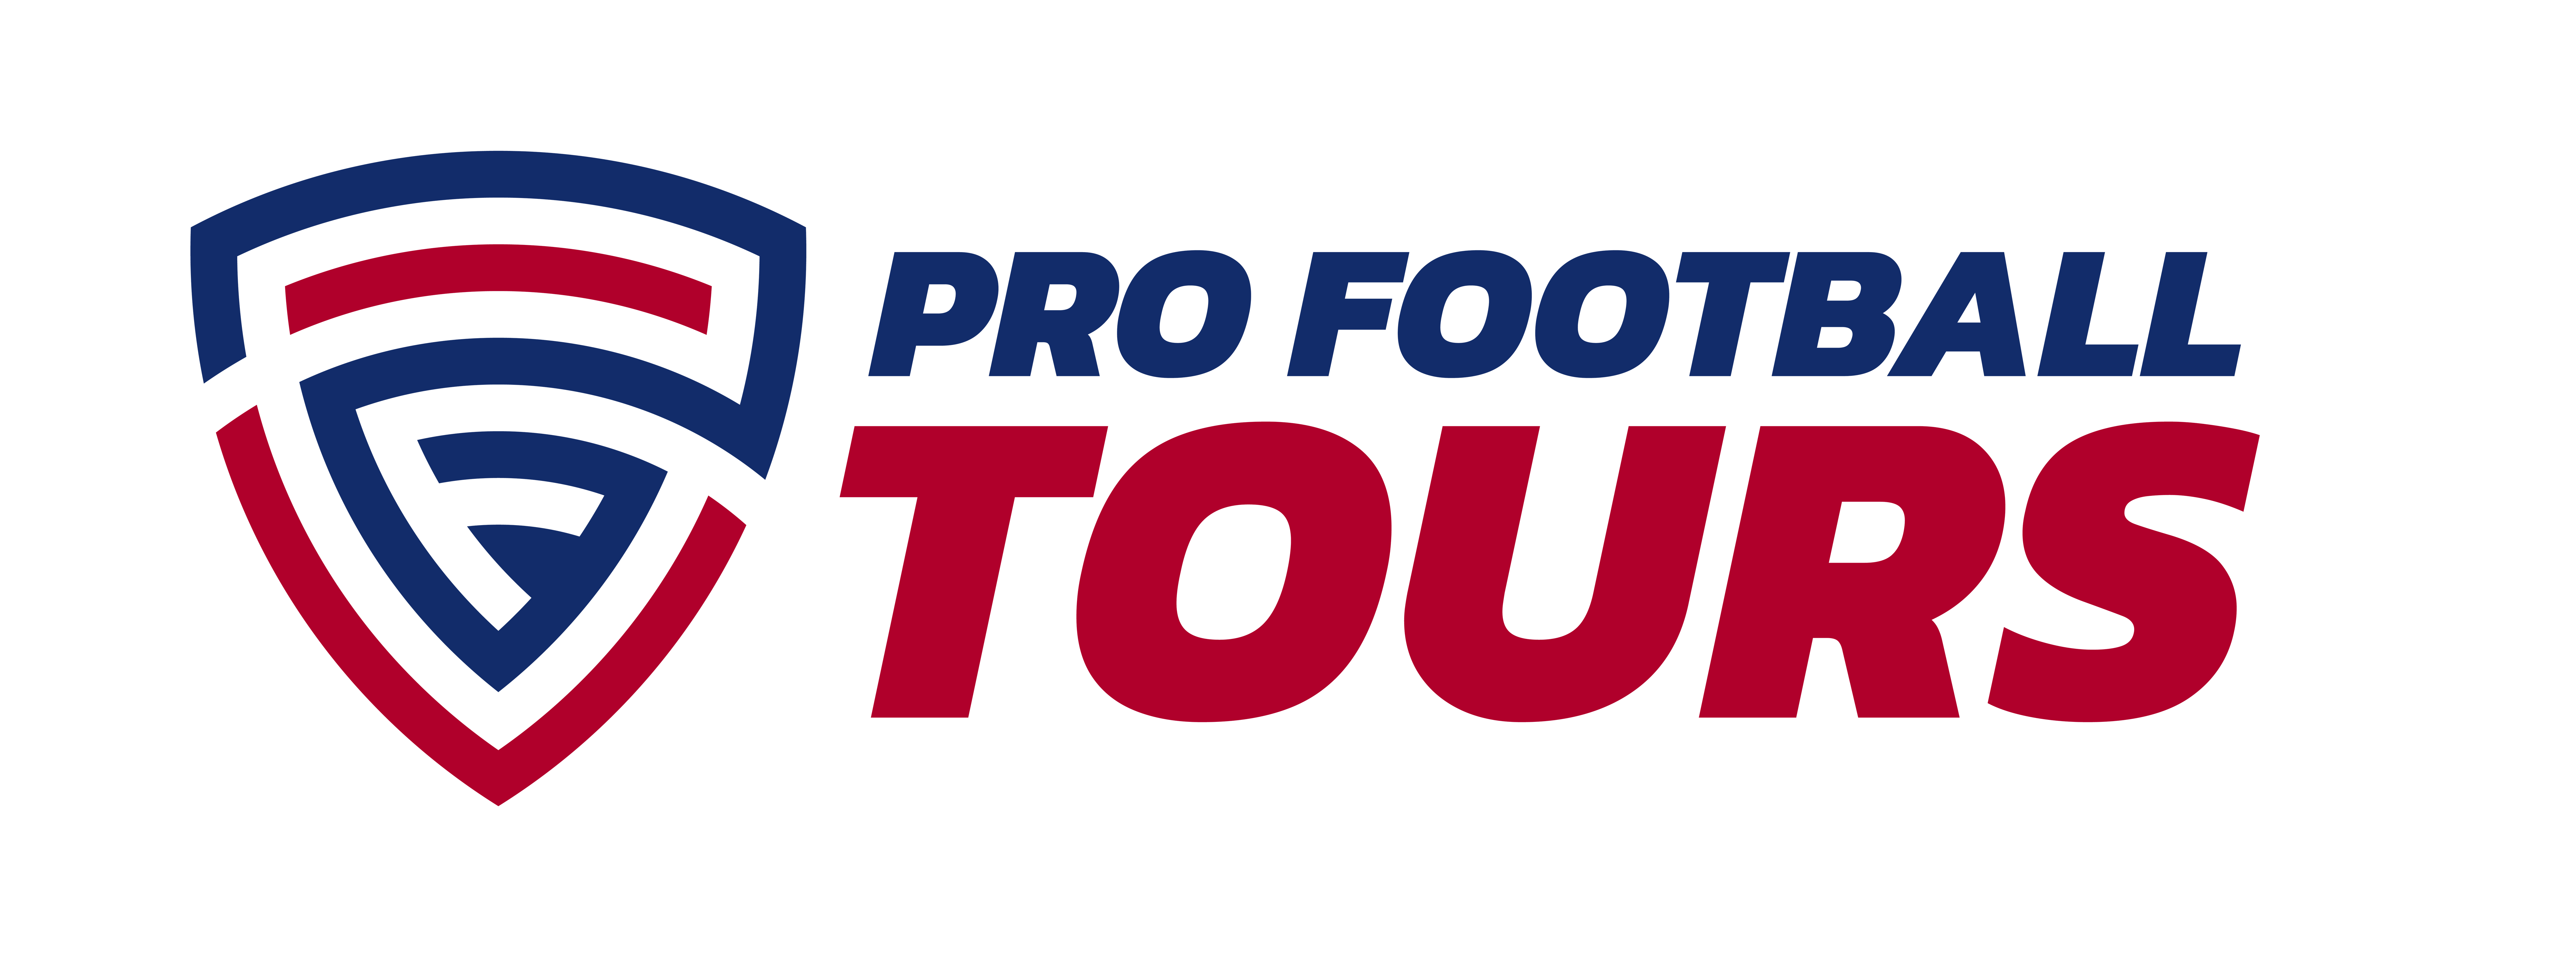 Pro Football Tours logo